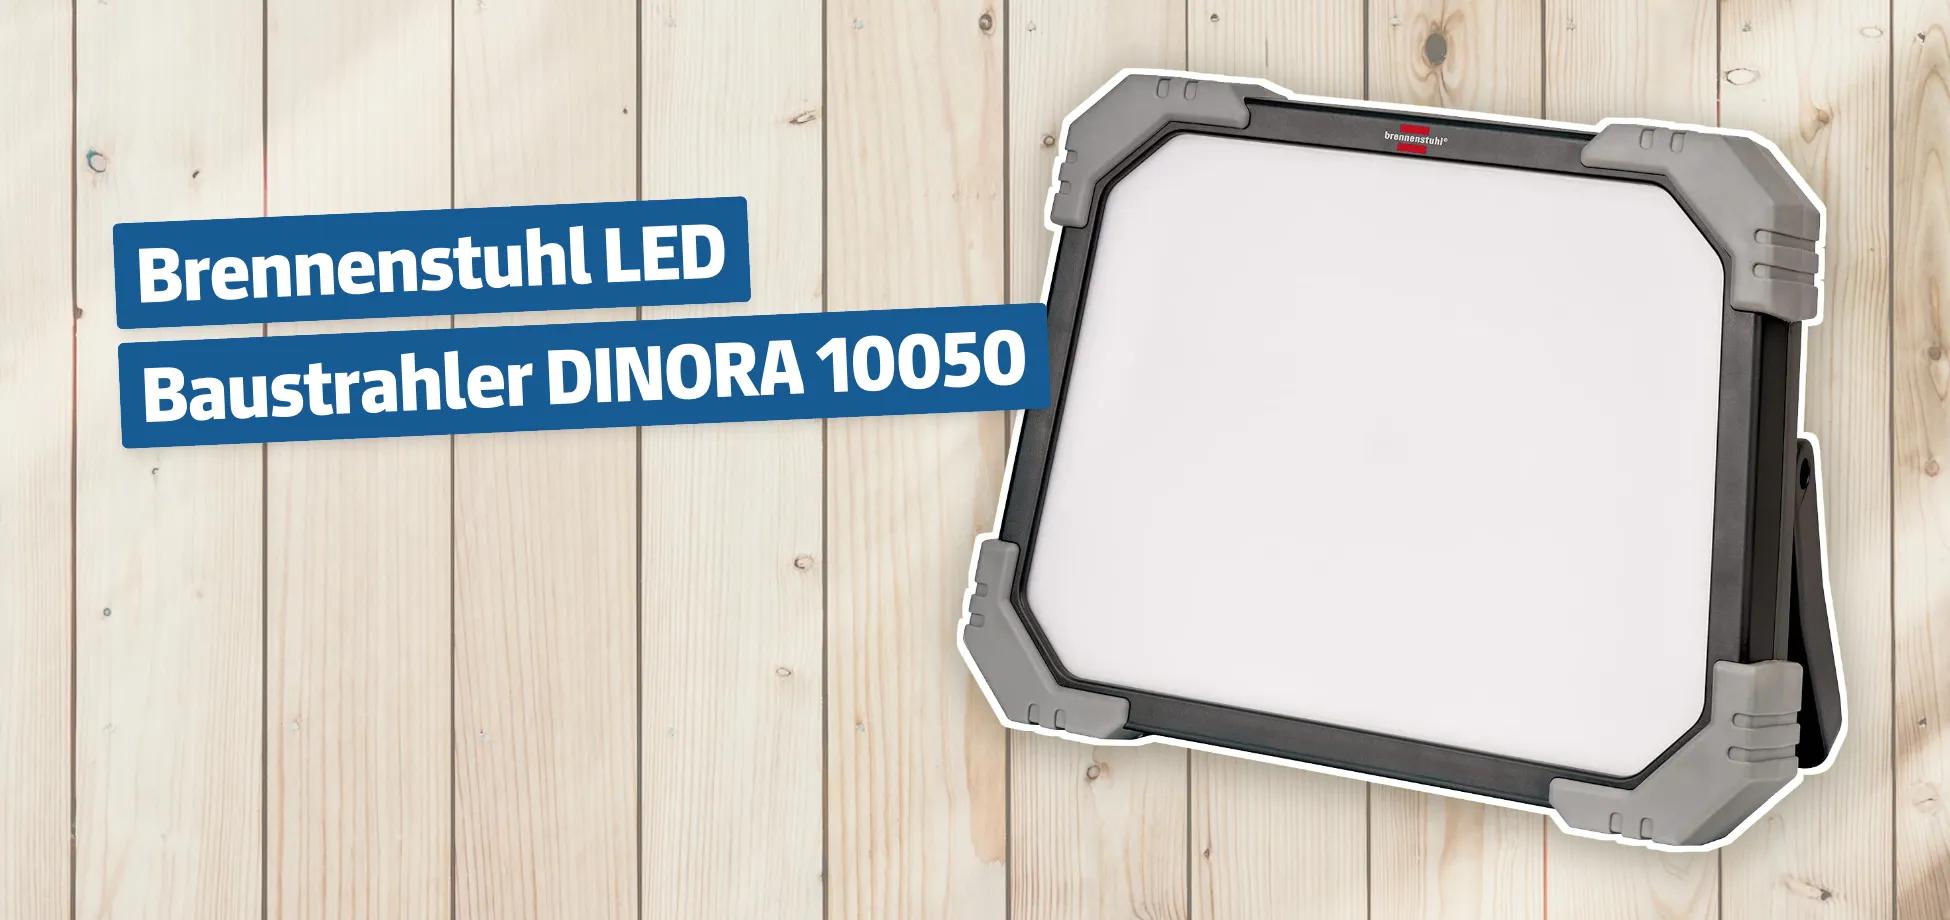 Brennenstuhl LED Baustrahler DINORA 10050